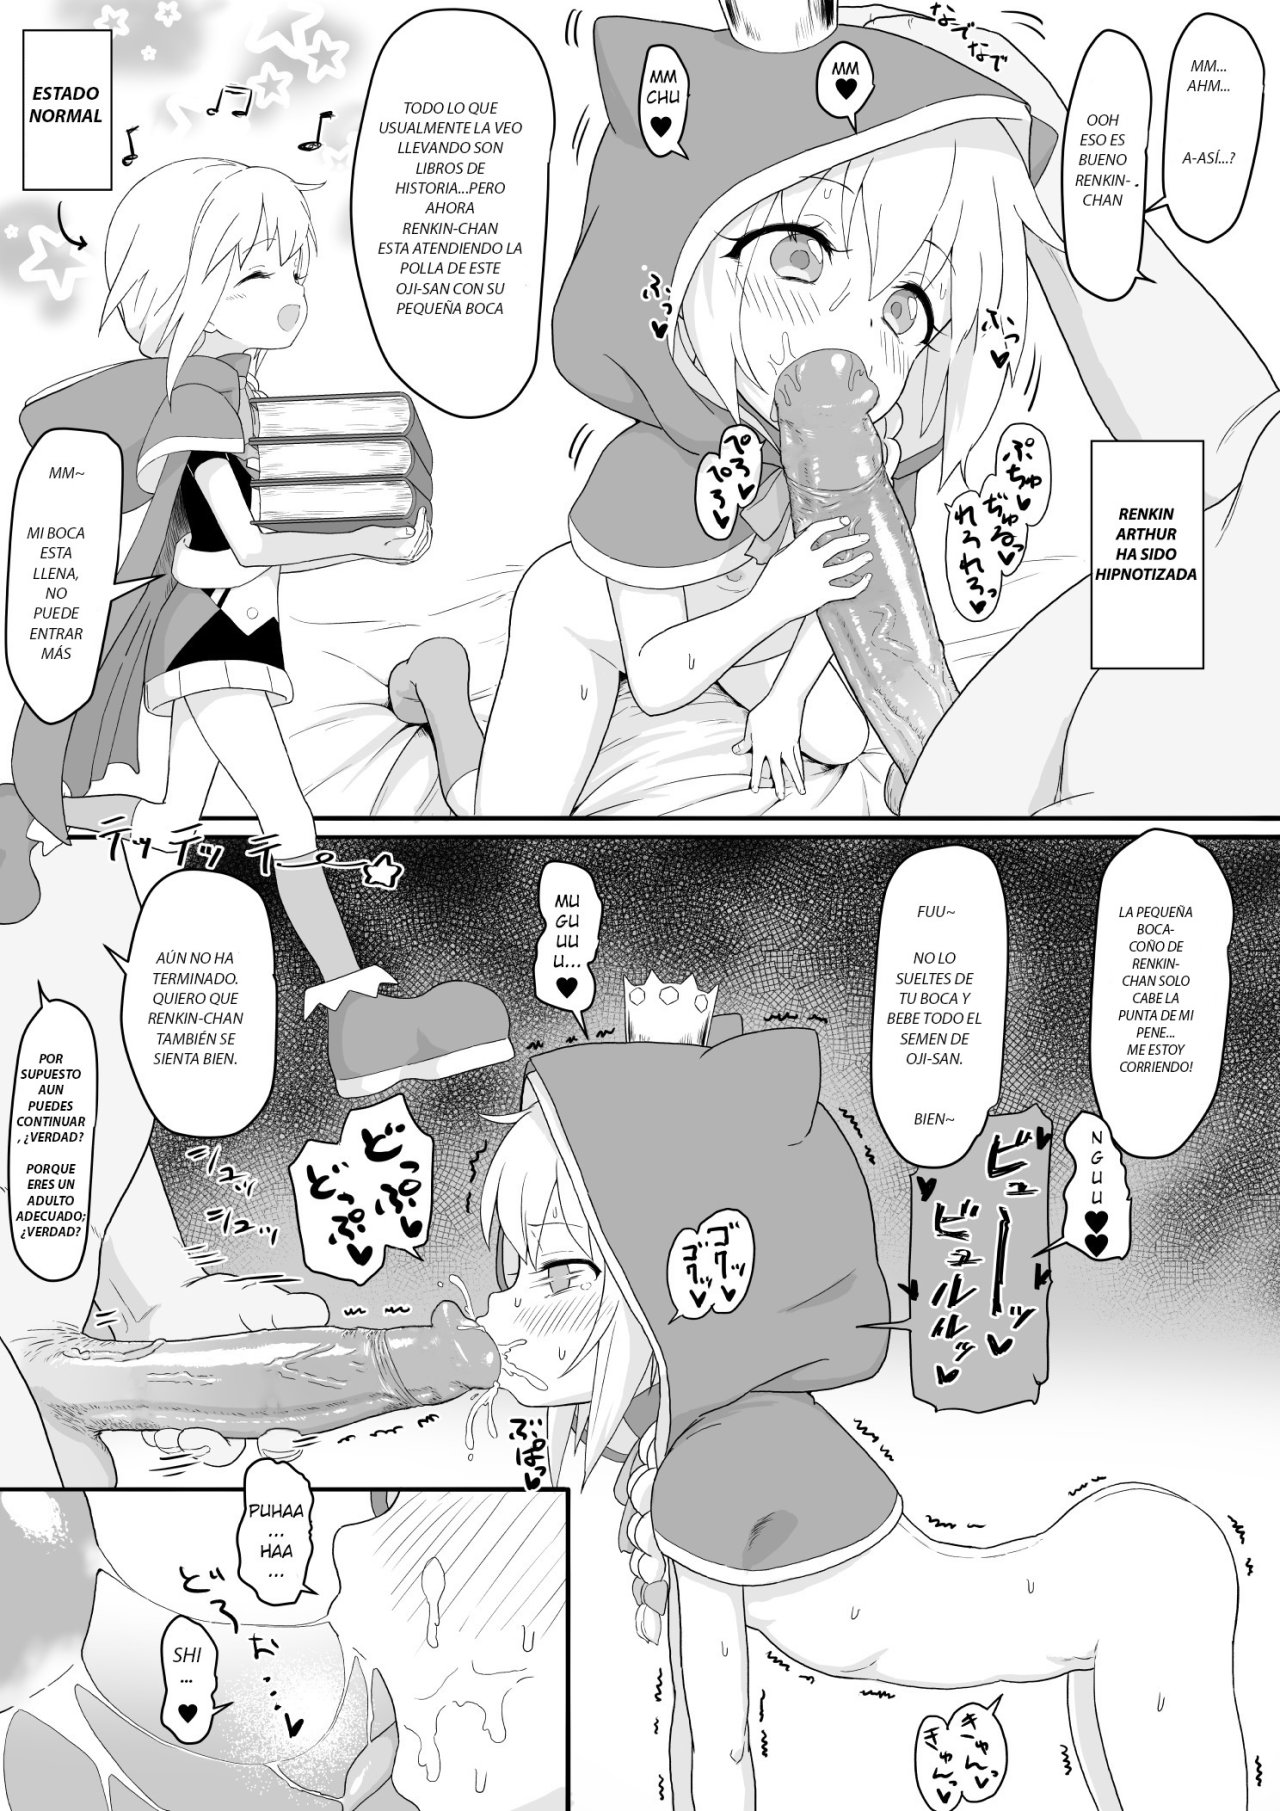 Renkin Arthur-chan 4 Page Manga - 0